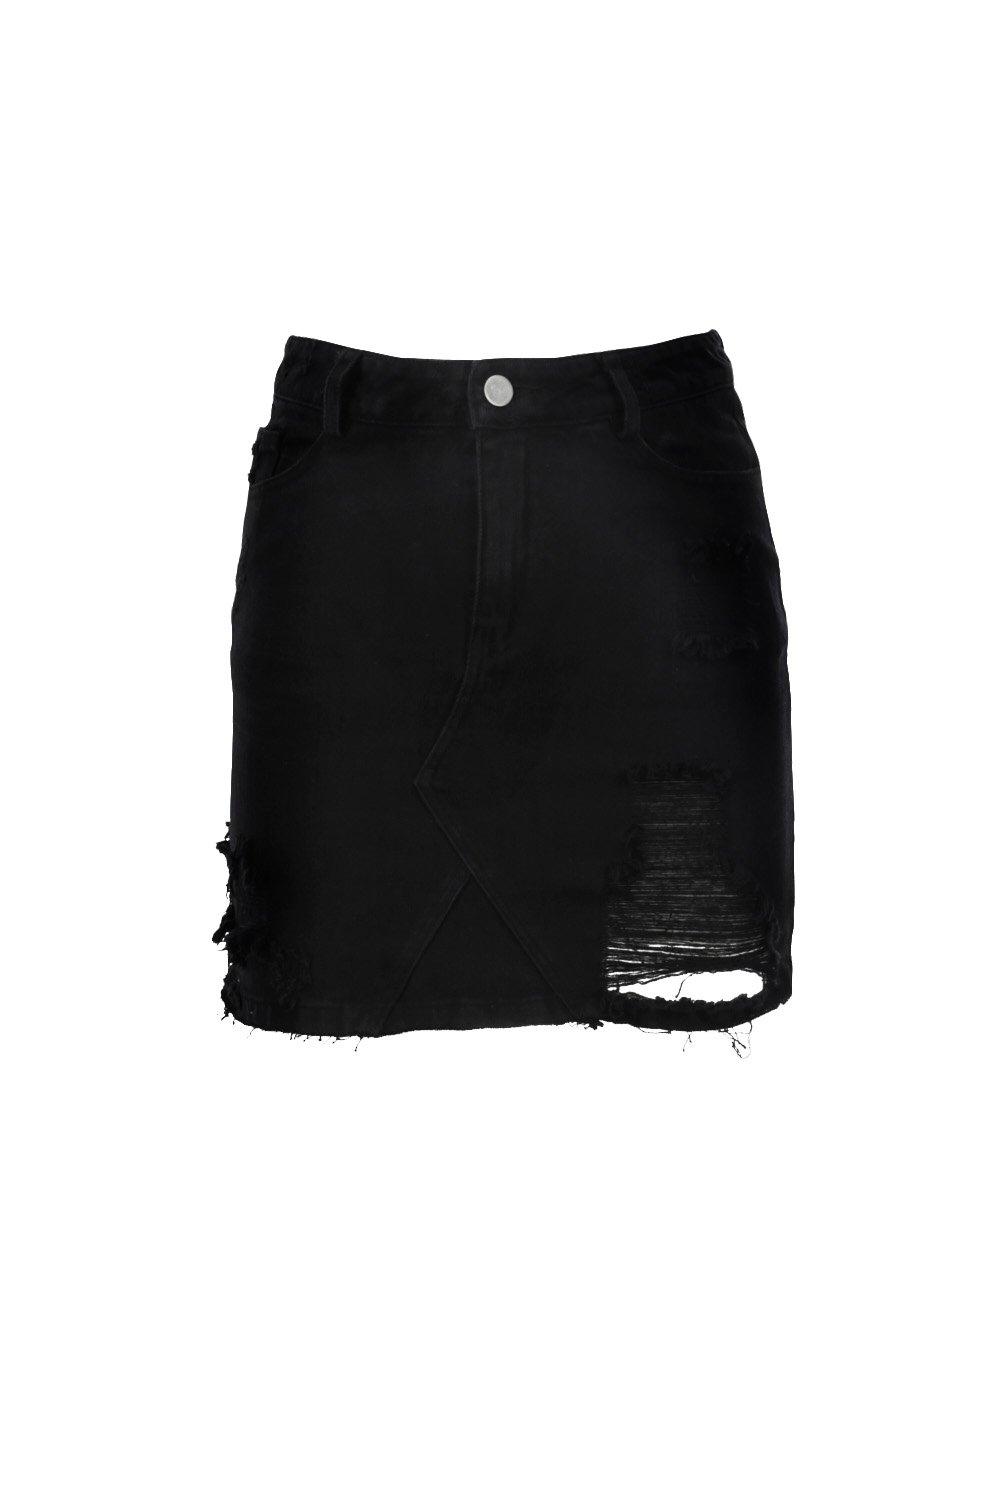 black ripped denim skirt